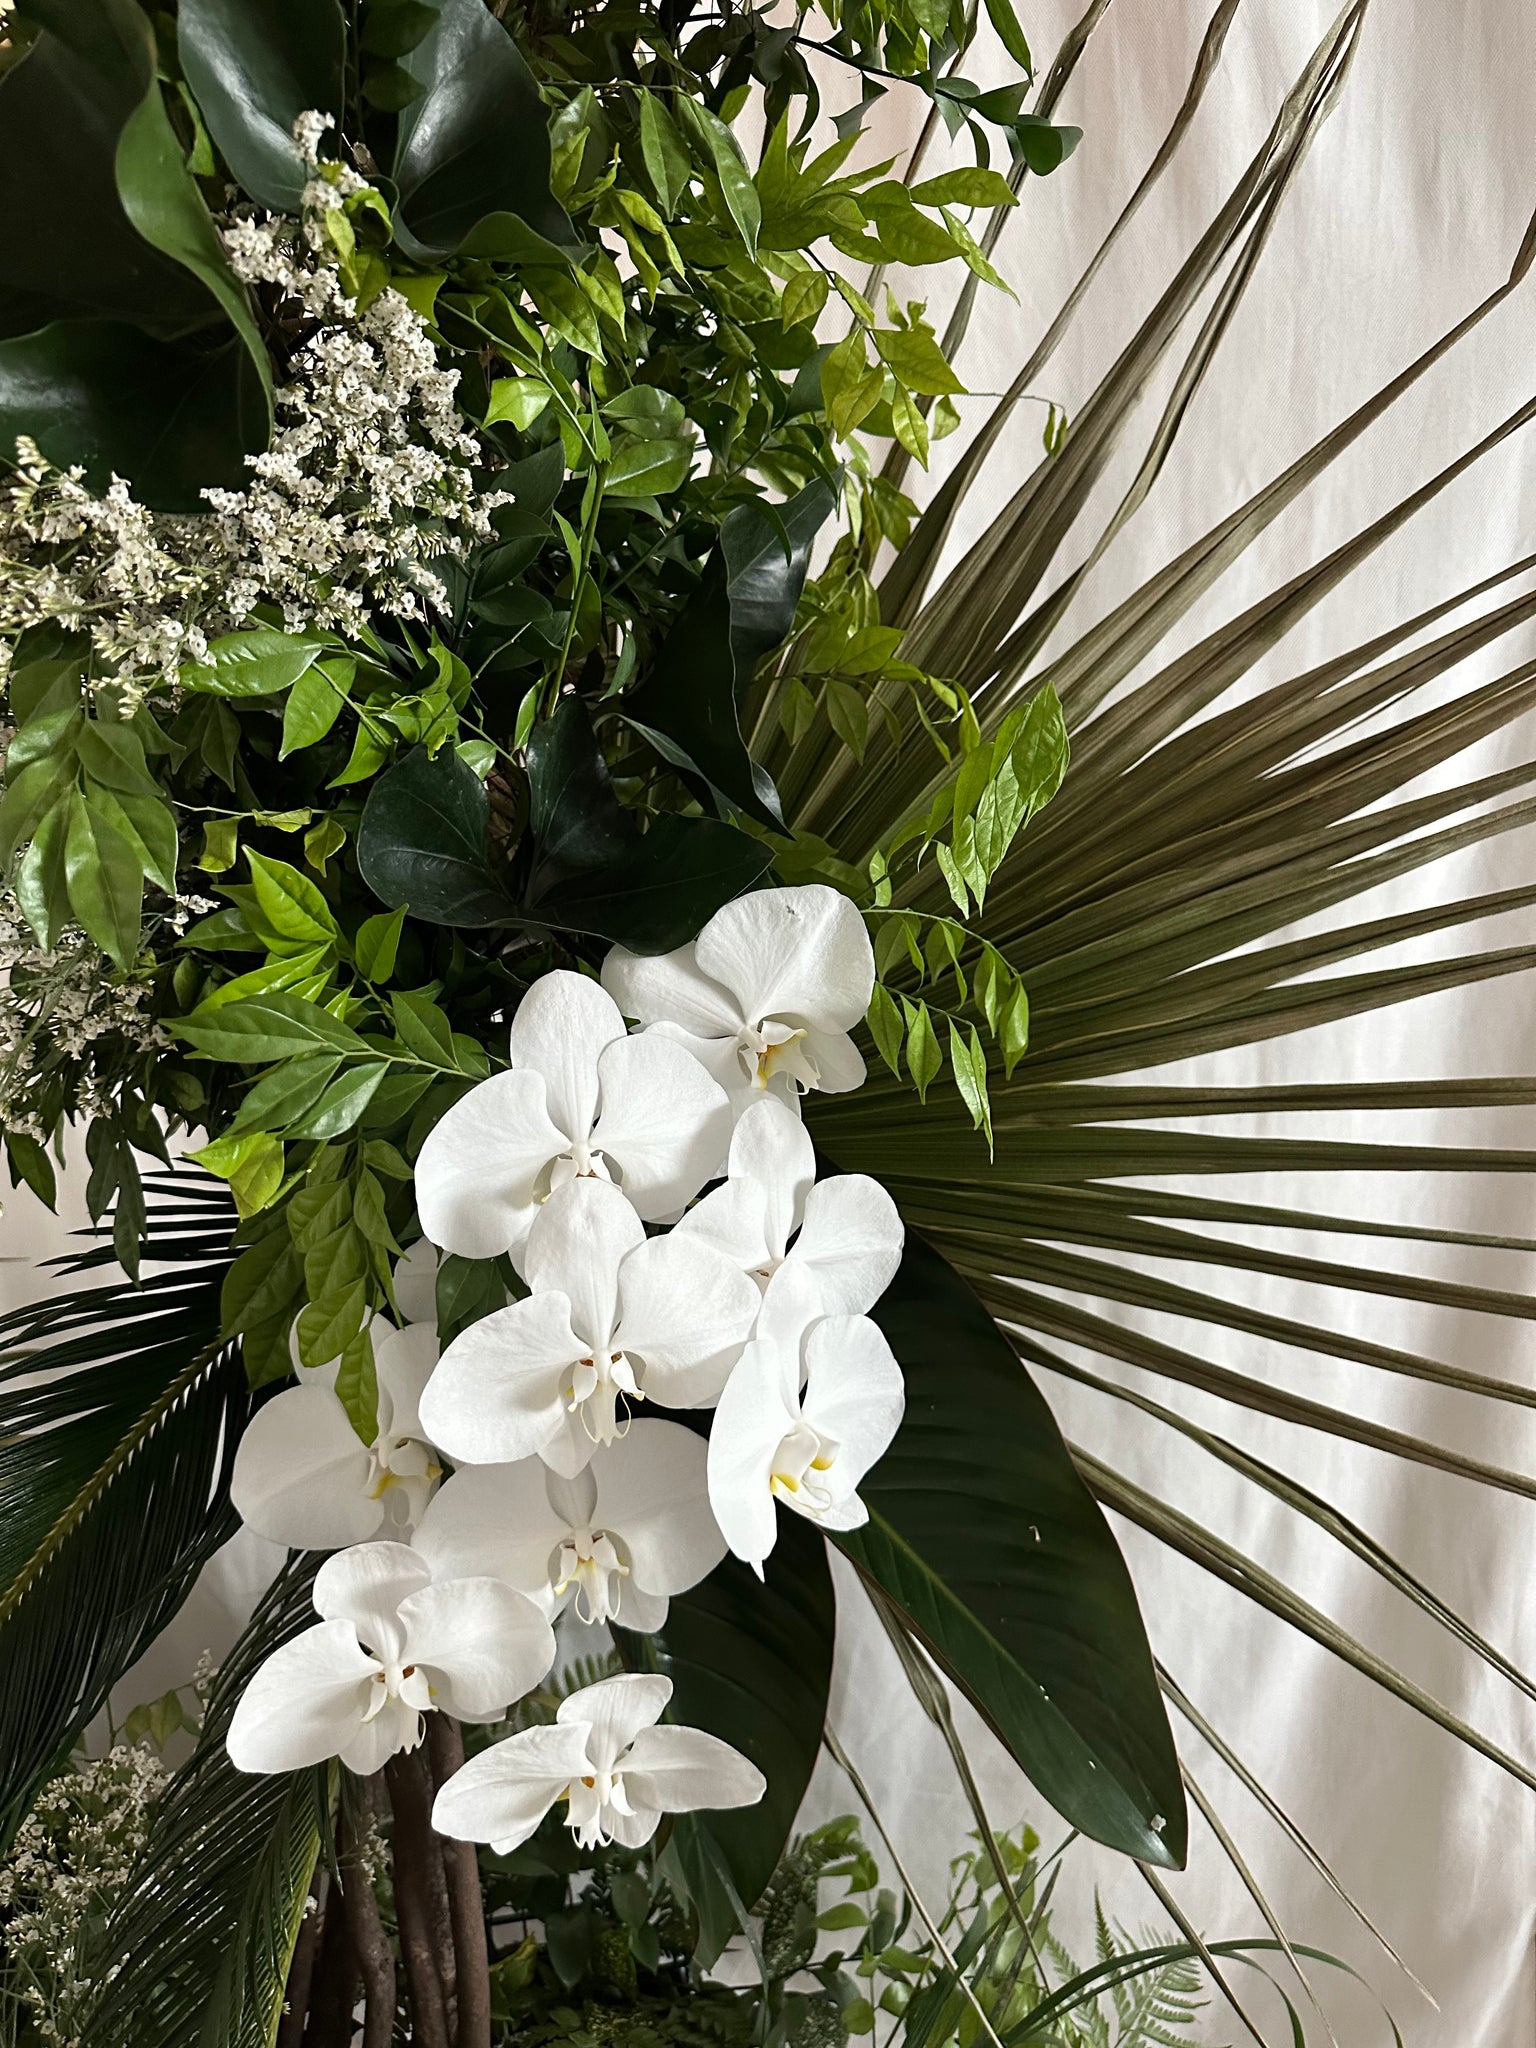 Echevaria.co Studio Launch Event Botanical Floral Arrangements Backdrop Arch 02